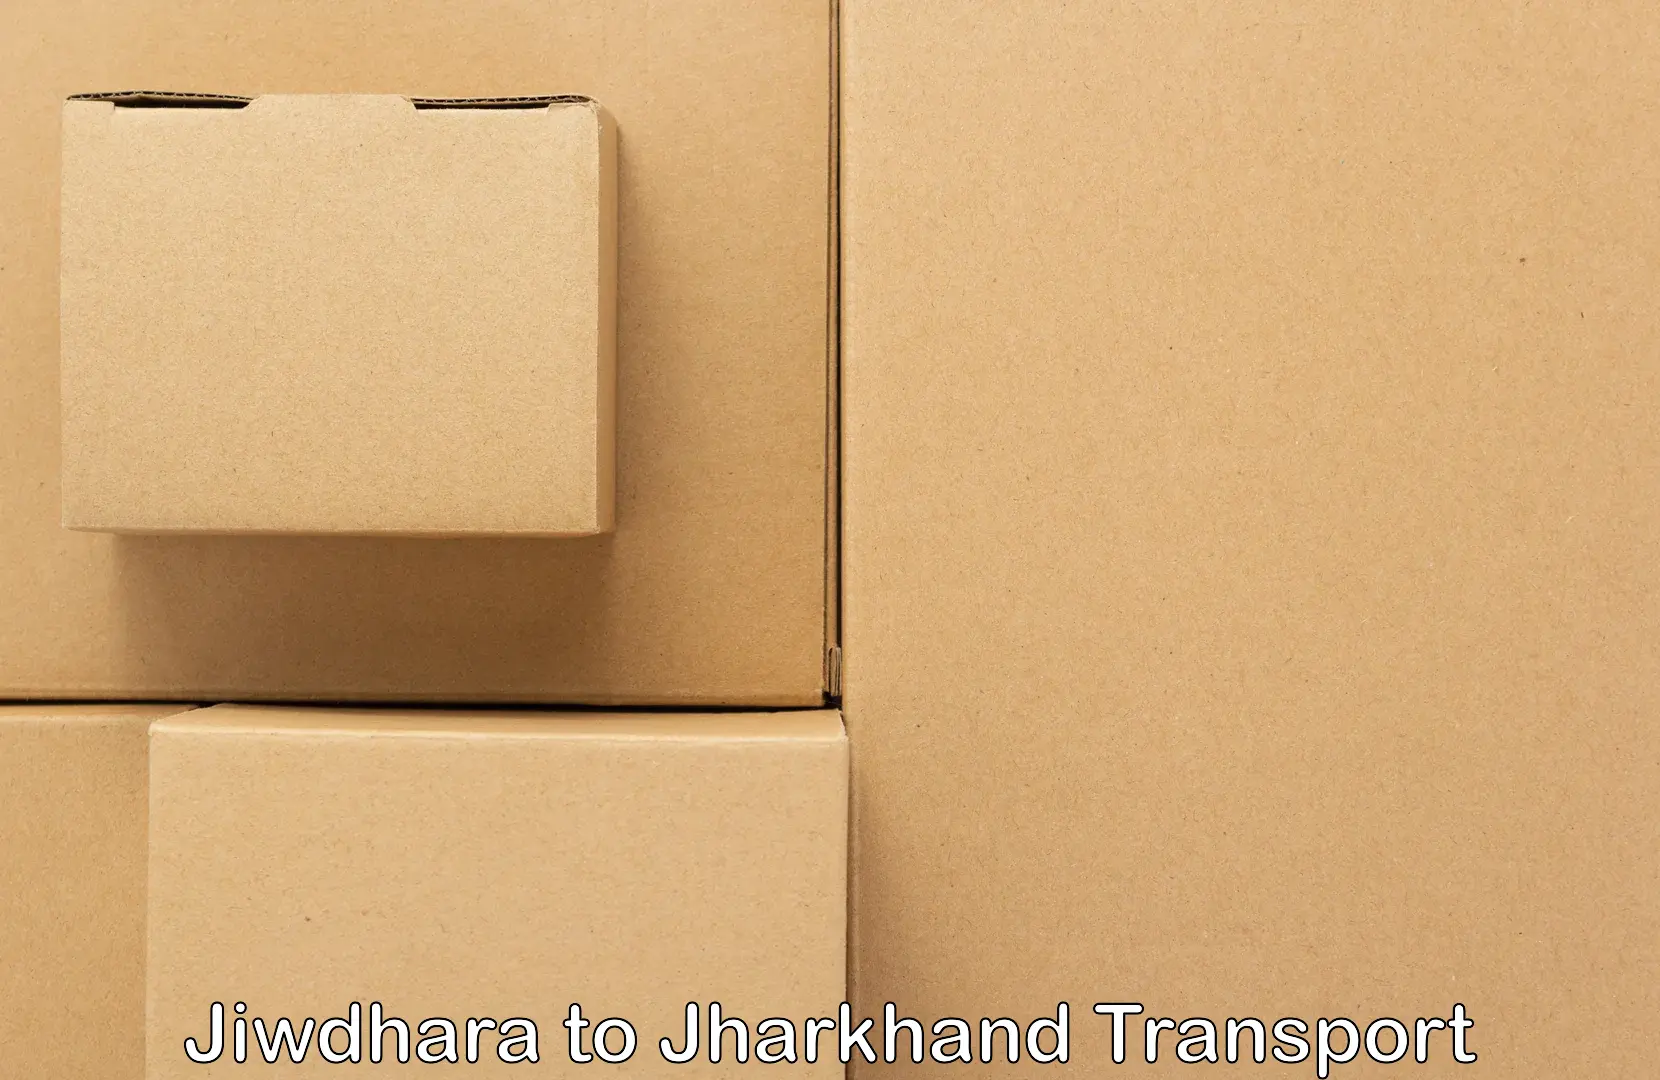 Two wheeler parcel service Jiwdhara to Chandil